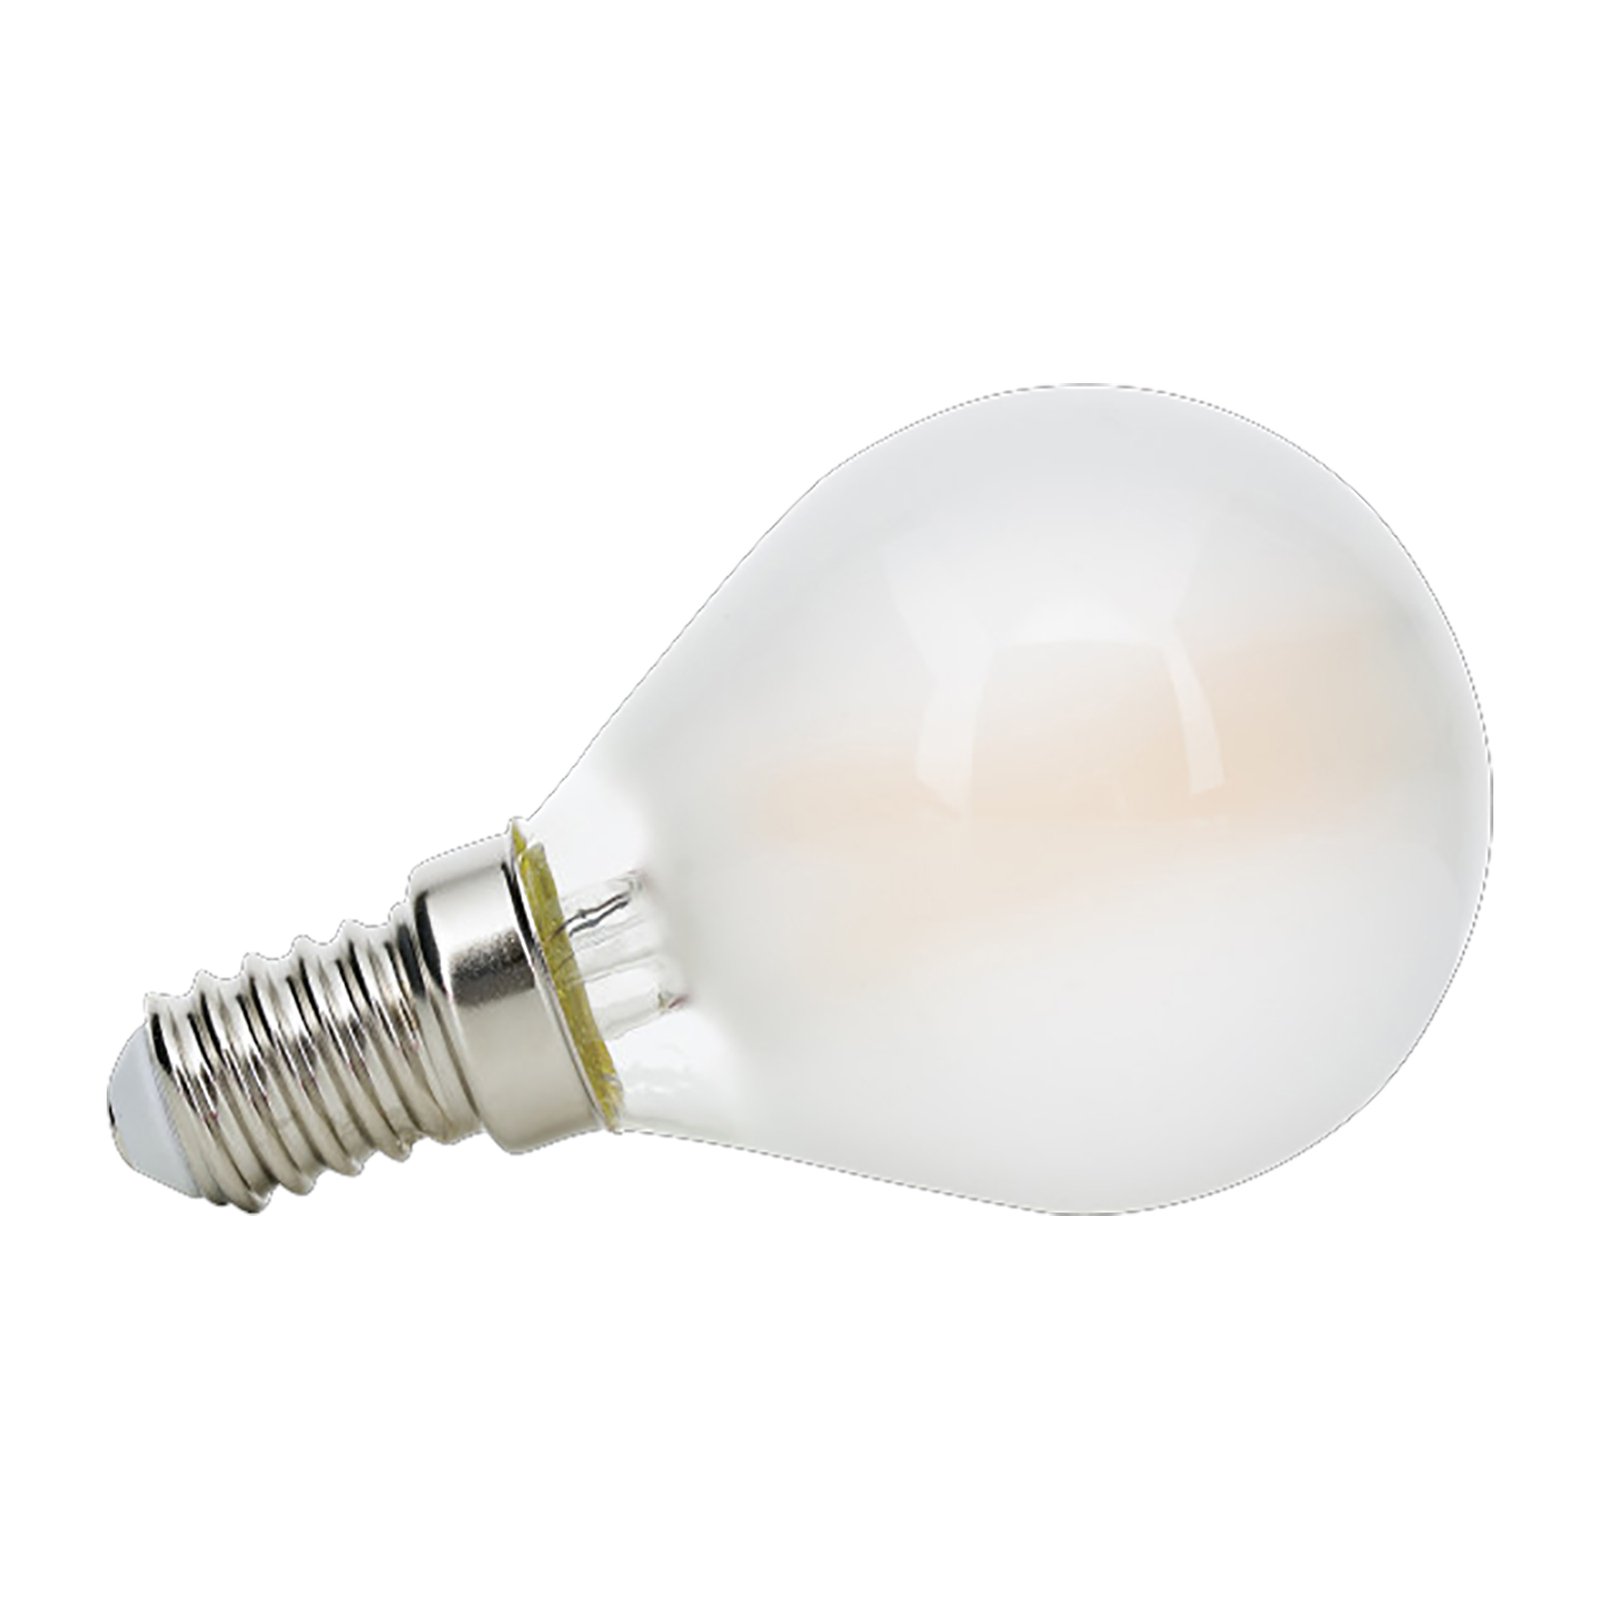 LED-Tropfenlampe E14 4,5W matt 2.700K dimmbar